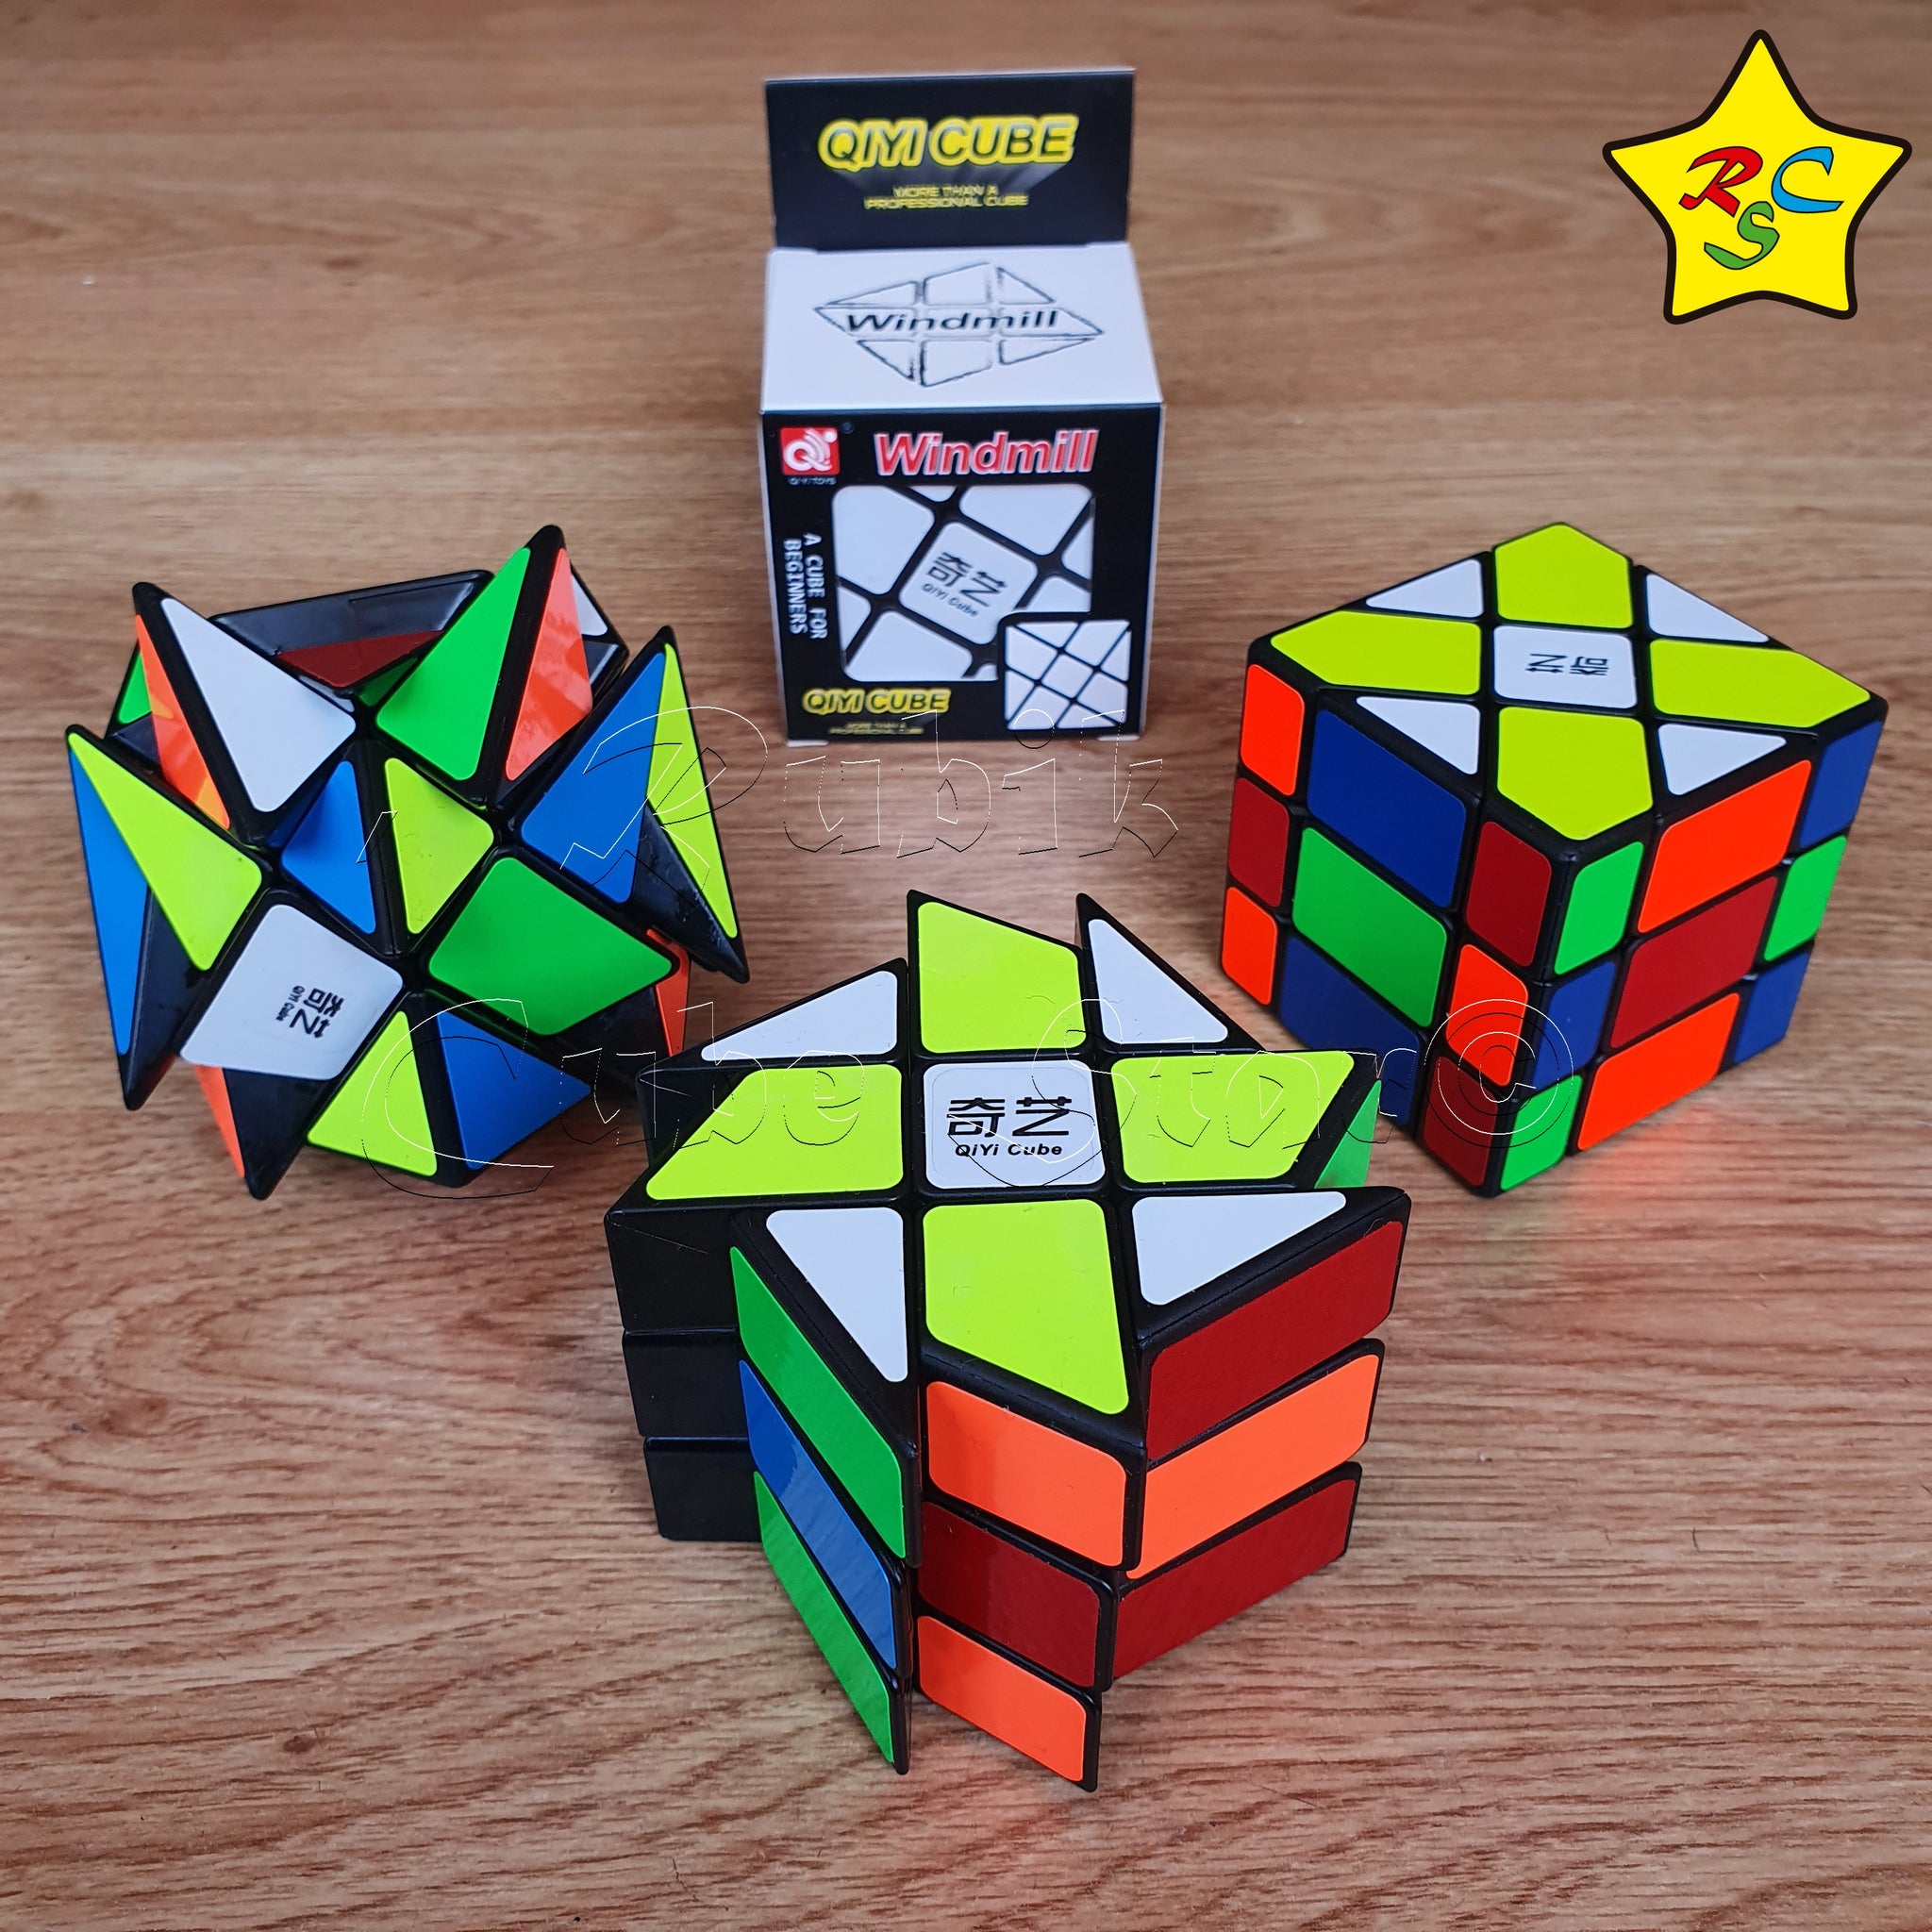 Imagenes De Cubos Rubik Pack 3 Mods Cubos Rubik 3x3 Fisher + Axis + Windmill Qiyi – Rubik Cube Star